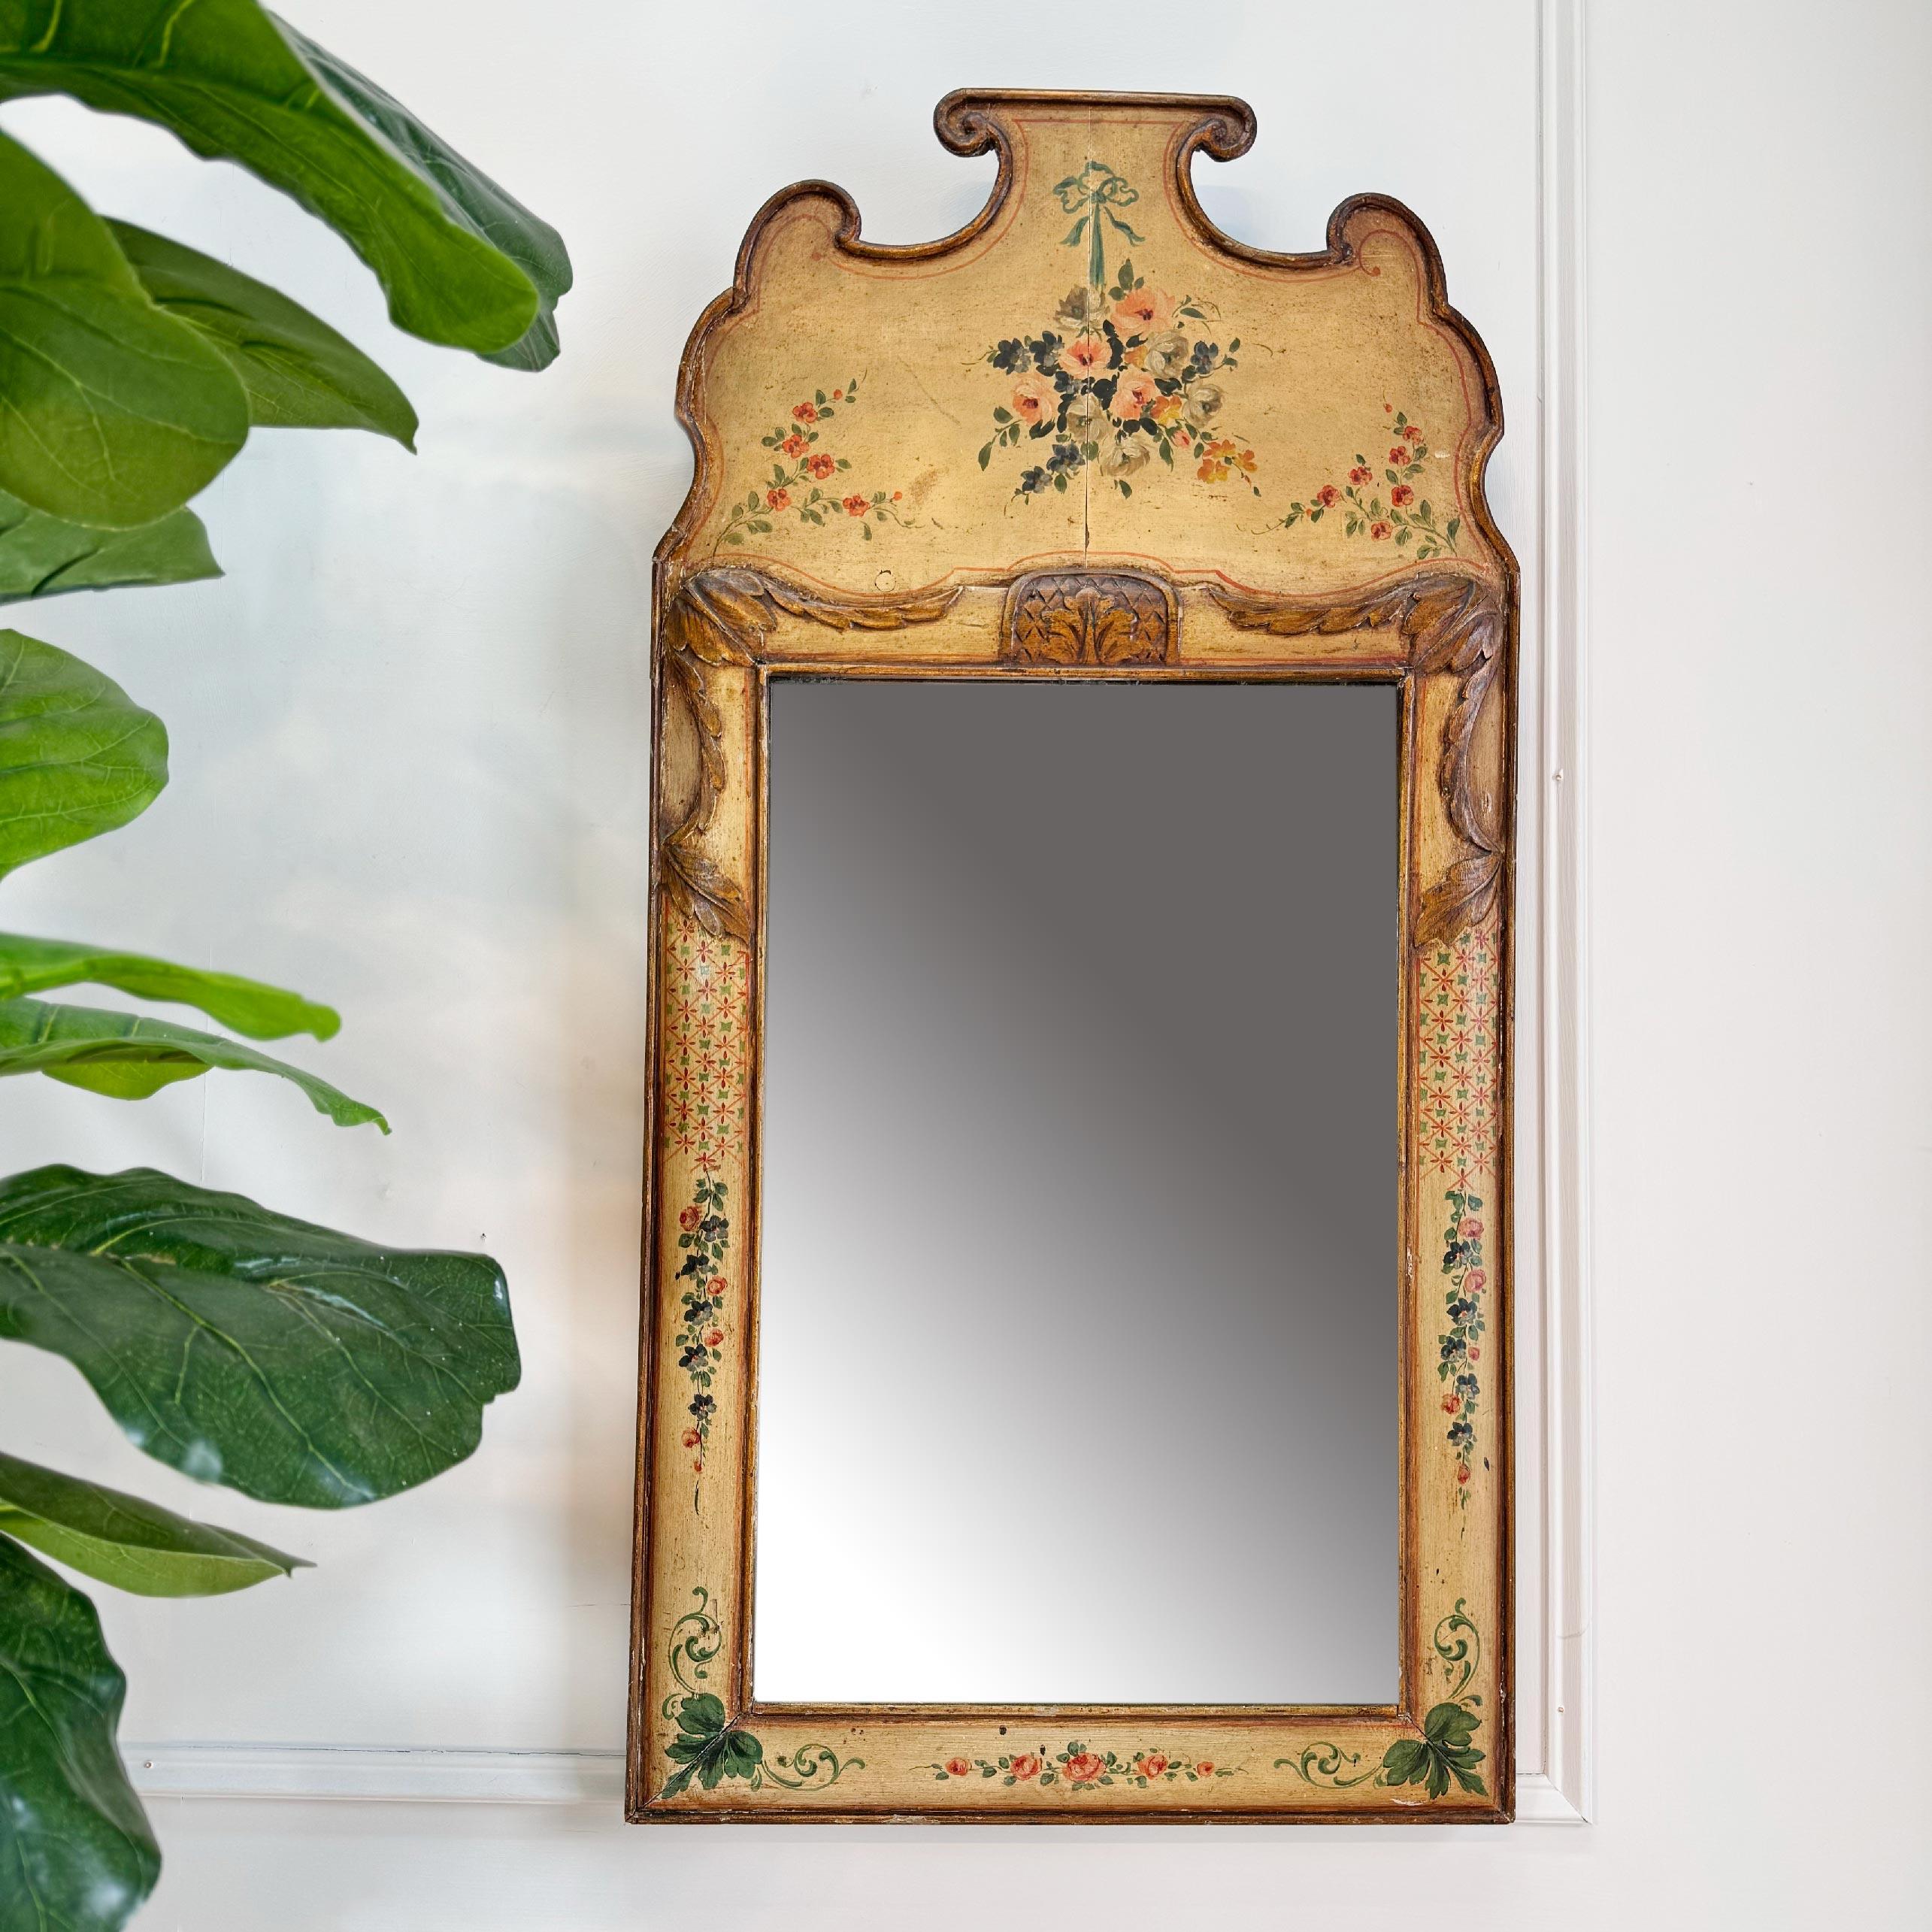 Ein schöner Spiegel aus dem späten 18. Jahrhundert im Queen-Anne-Stil, vergoldet über Gesso-Verzierungen und handgemalten dekorativen Elementen aus Blumen und Blättern auf einem zartgelben Untergrund.  Hintergrund.



Dies ist eine absolut schöne